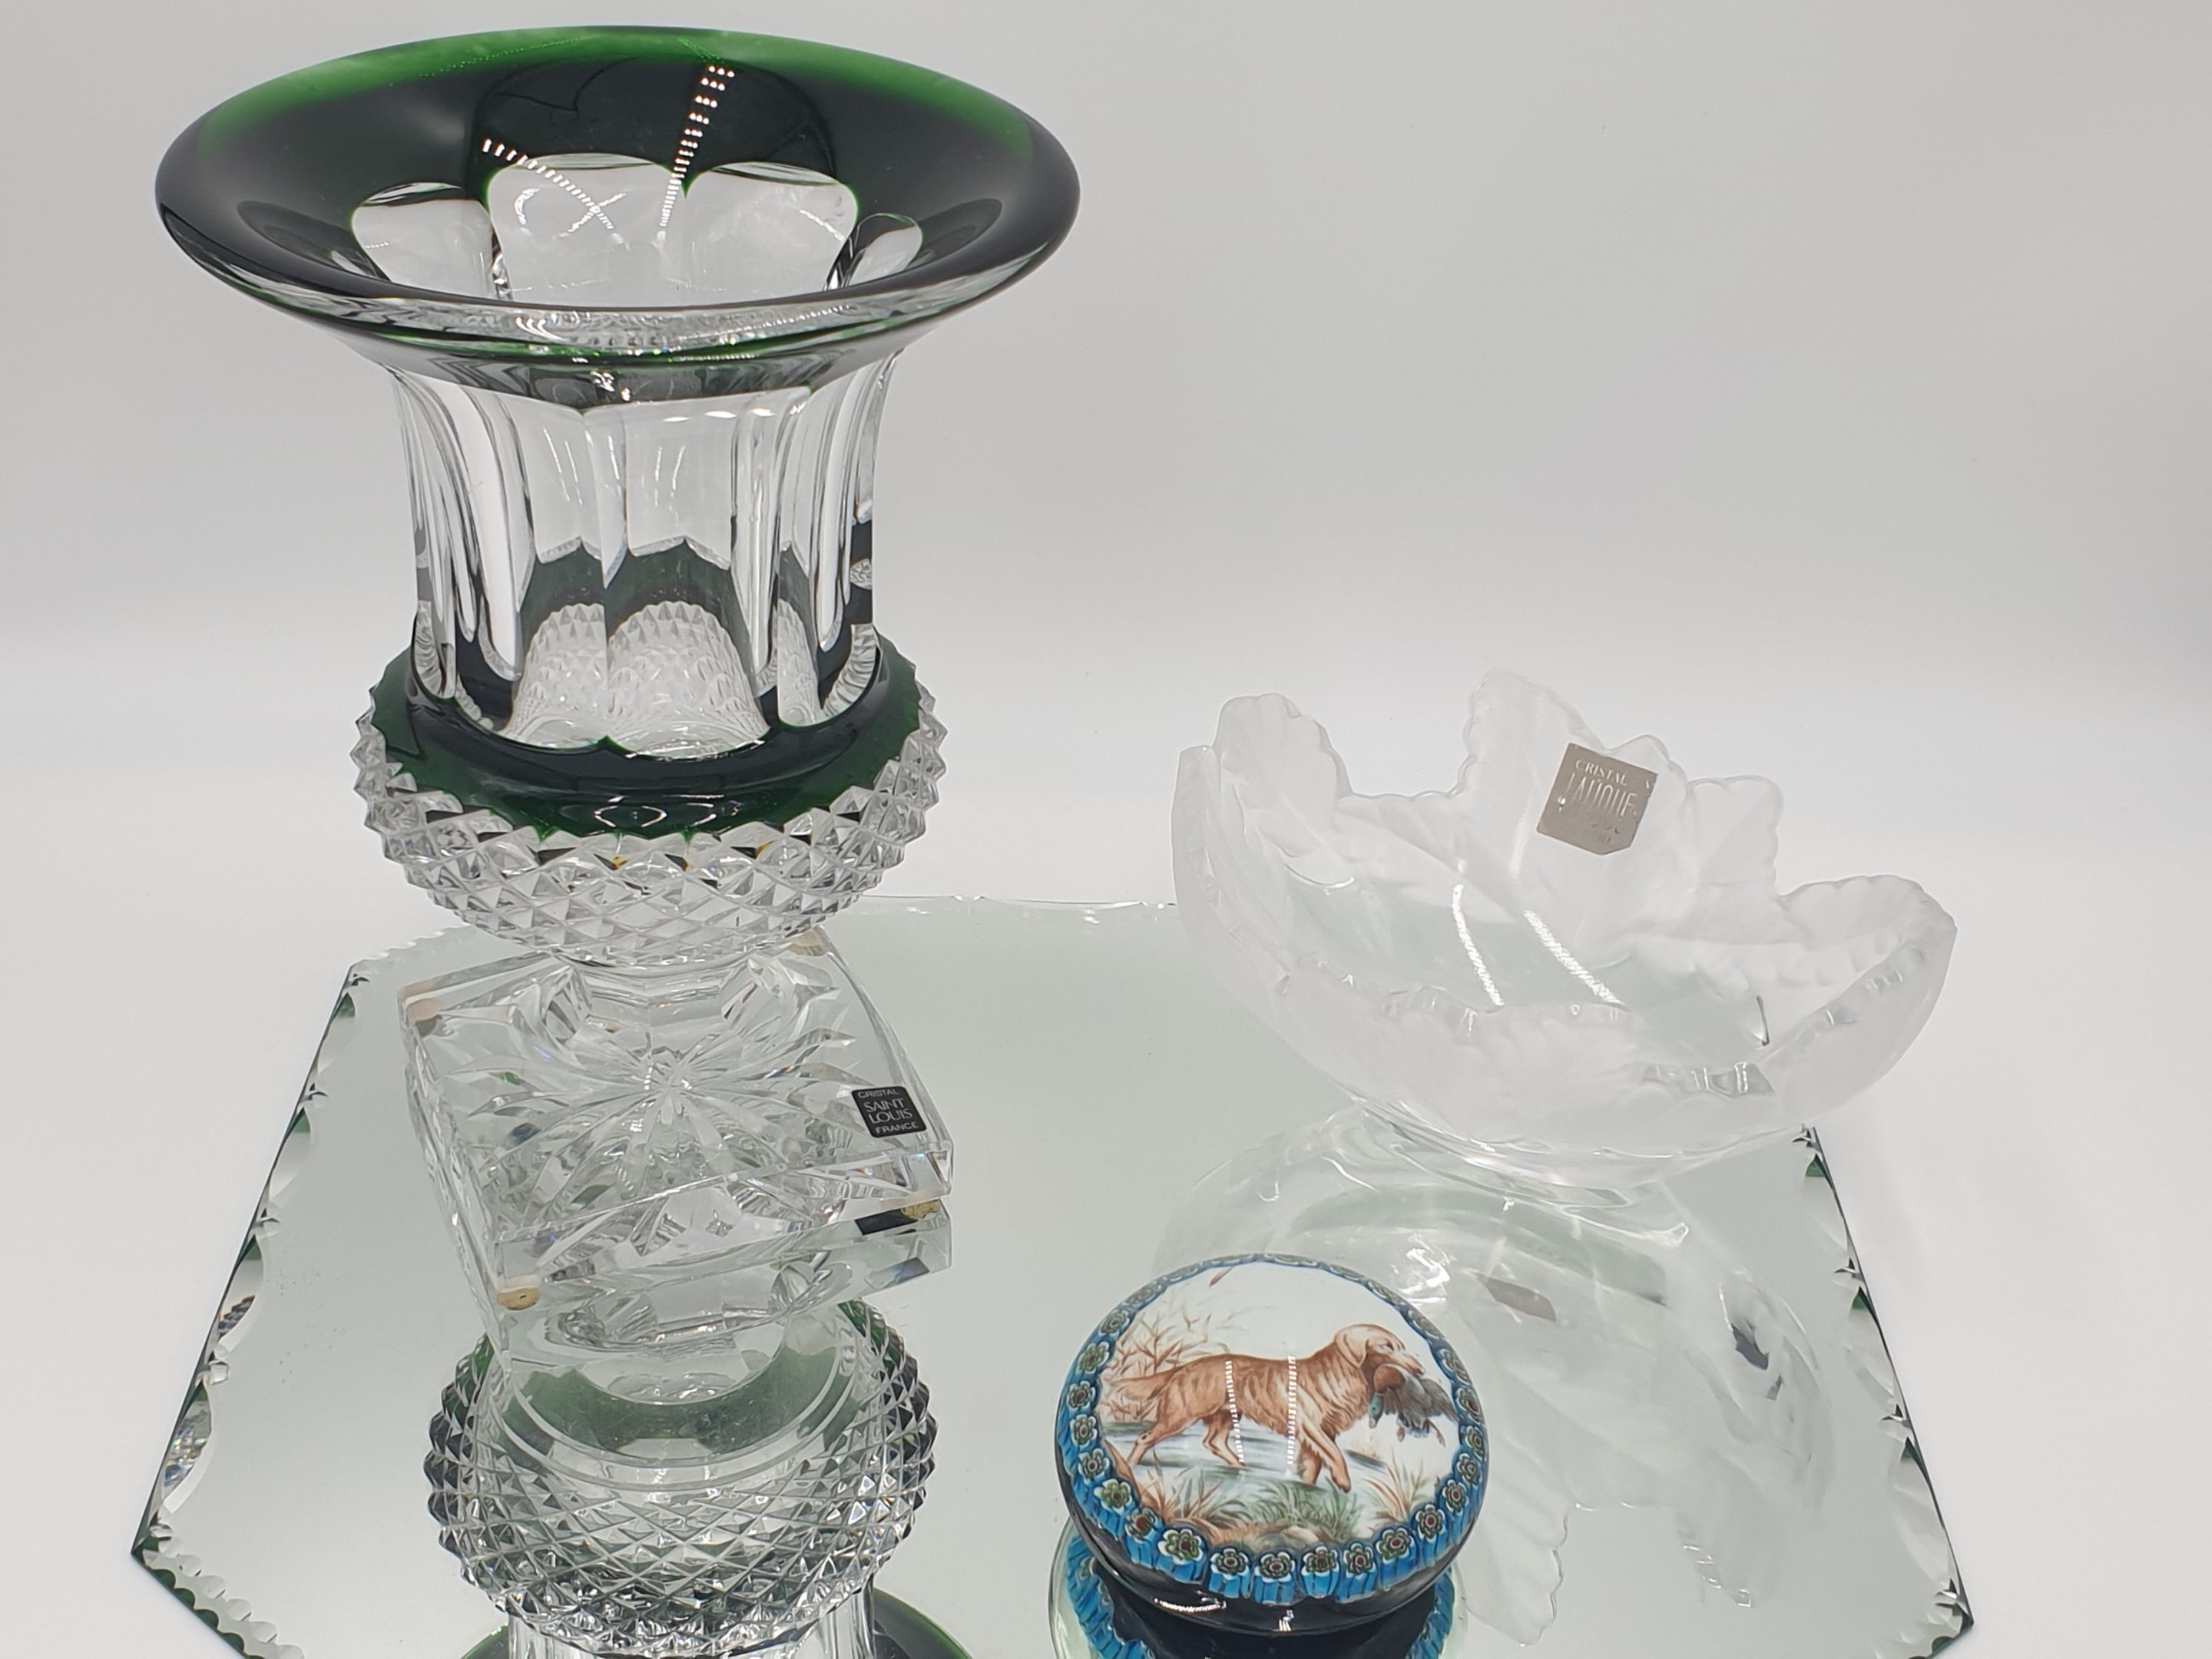 Vase en cristal St Louis modèle Versailles,presse-papier en cristal de St Louis,coupe Lalique Champs Elysées